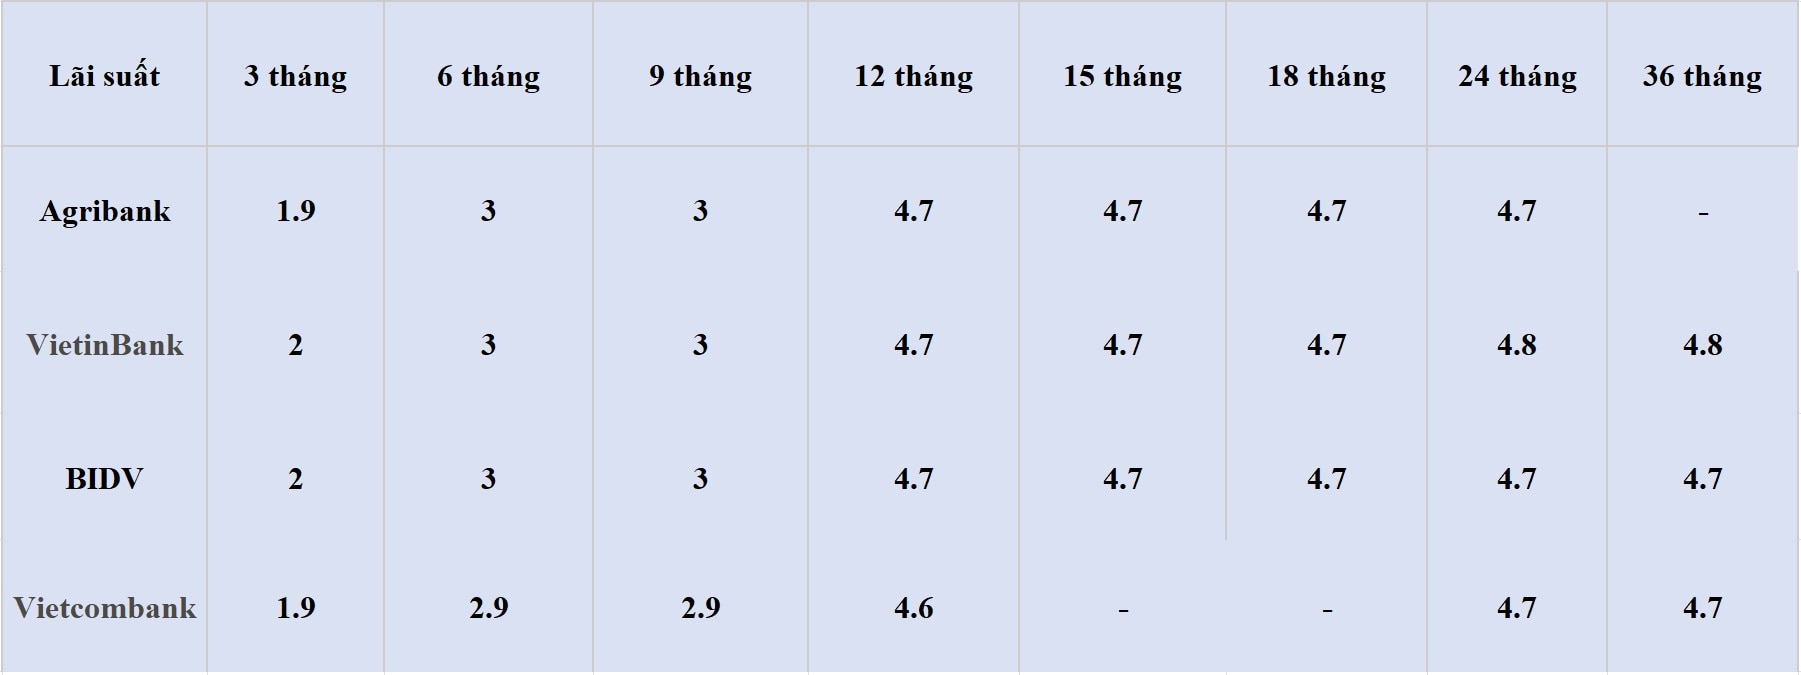 Bảng lãi suất các kỳ hạn tại Vietcombank, Agribank, VietinBank và BIDV. Số liệu ghi nhận ngày 4.5.2024. Đơn vị tính: %/năm. Bảng: Khương Duy